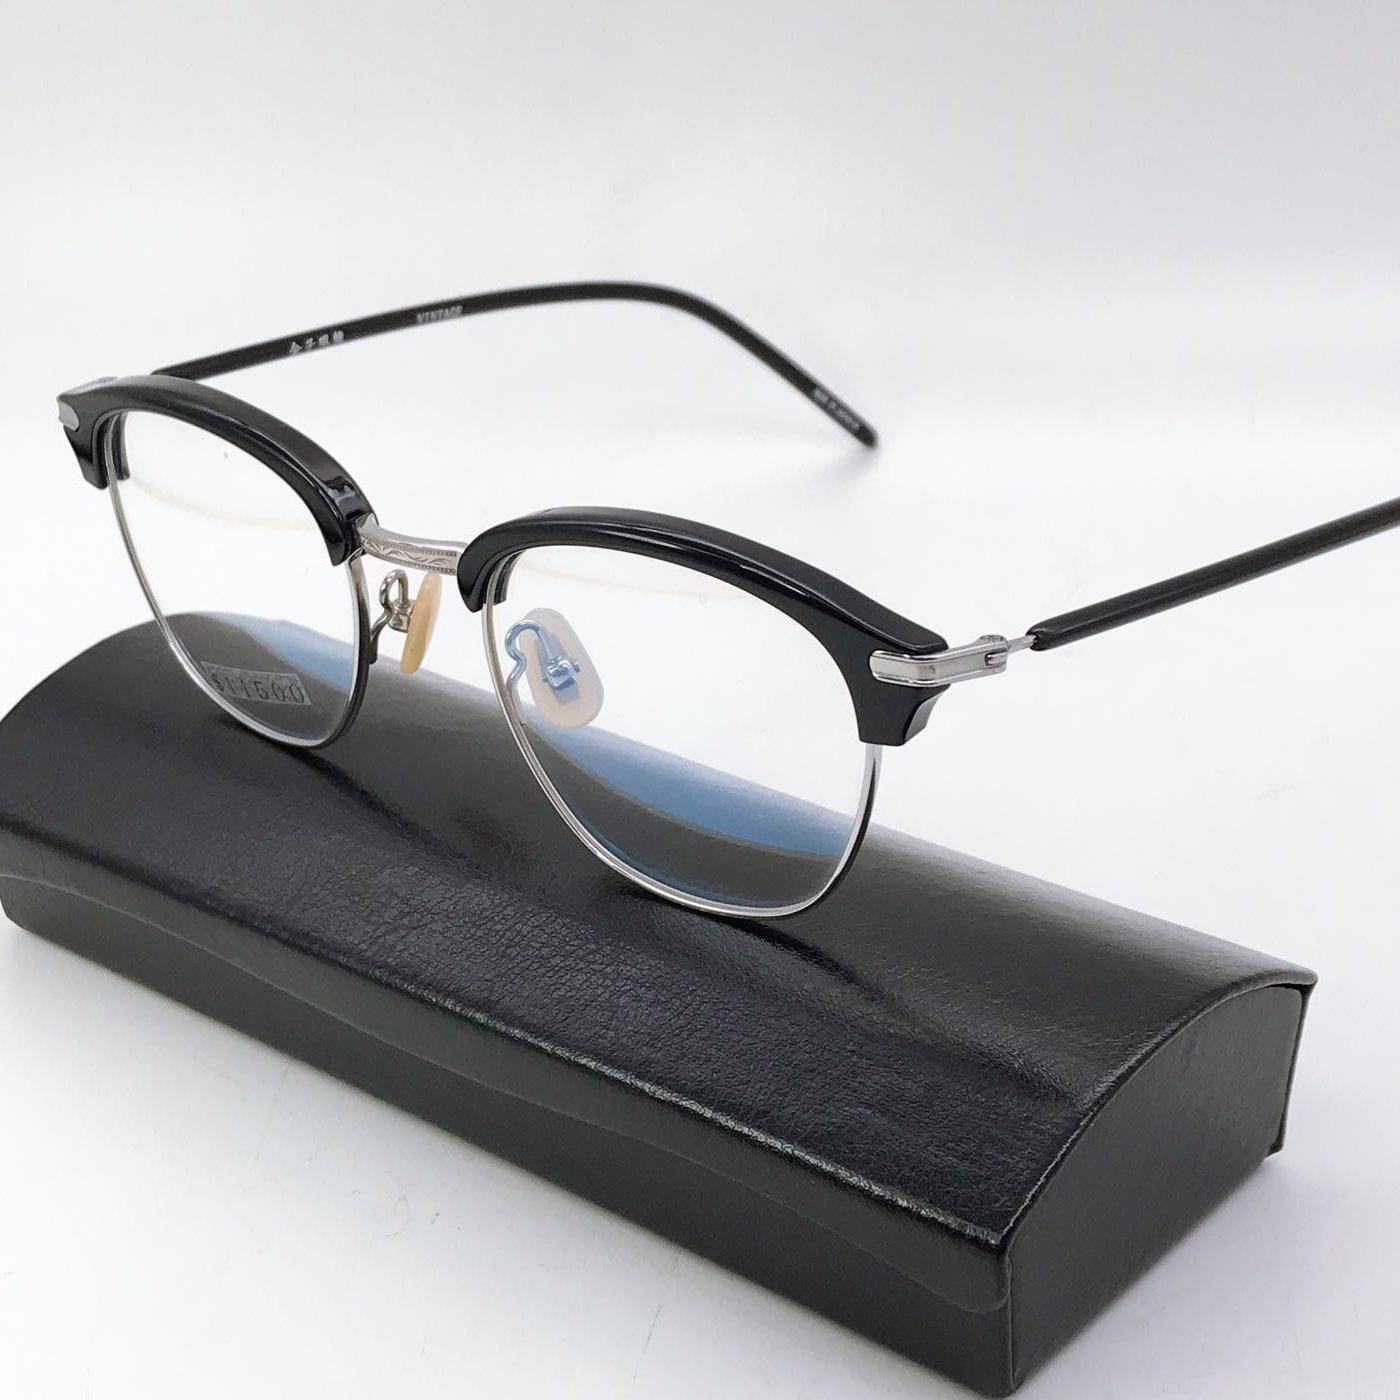 本閣】金子眼鏡日本手工眼鏡KV-34 賽璐珞復古眉框半框純鈦雷朋黑框泰